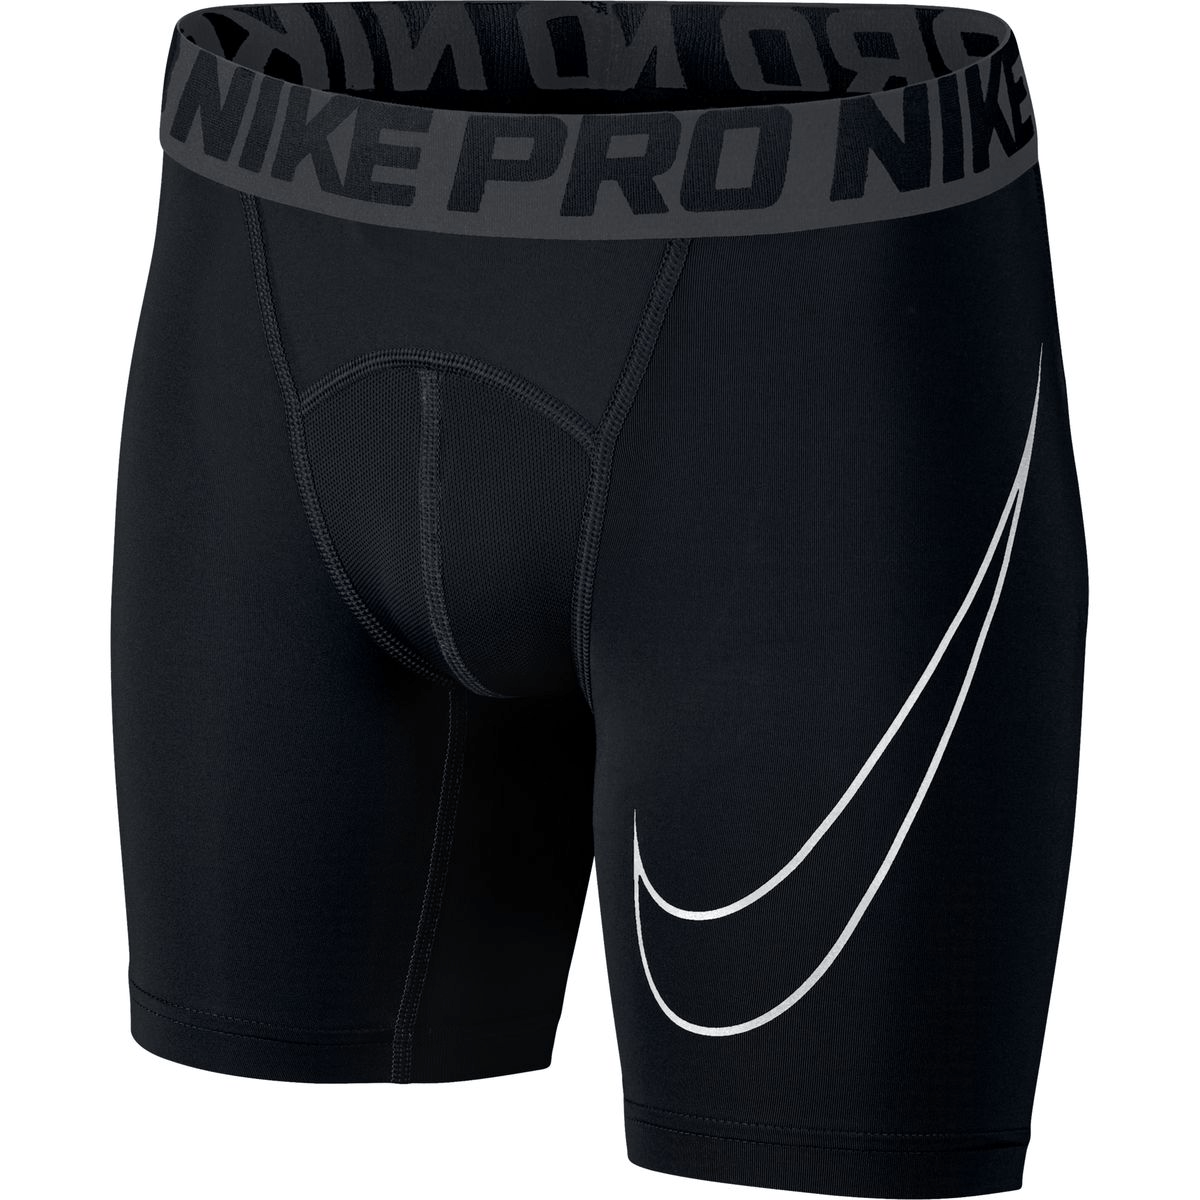 Nike Men's Pro Compression Short - Black